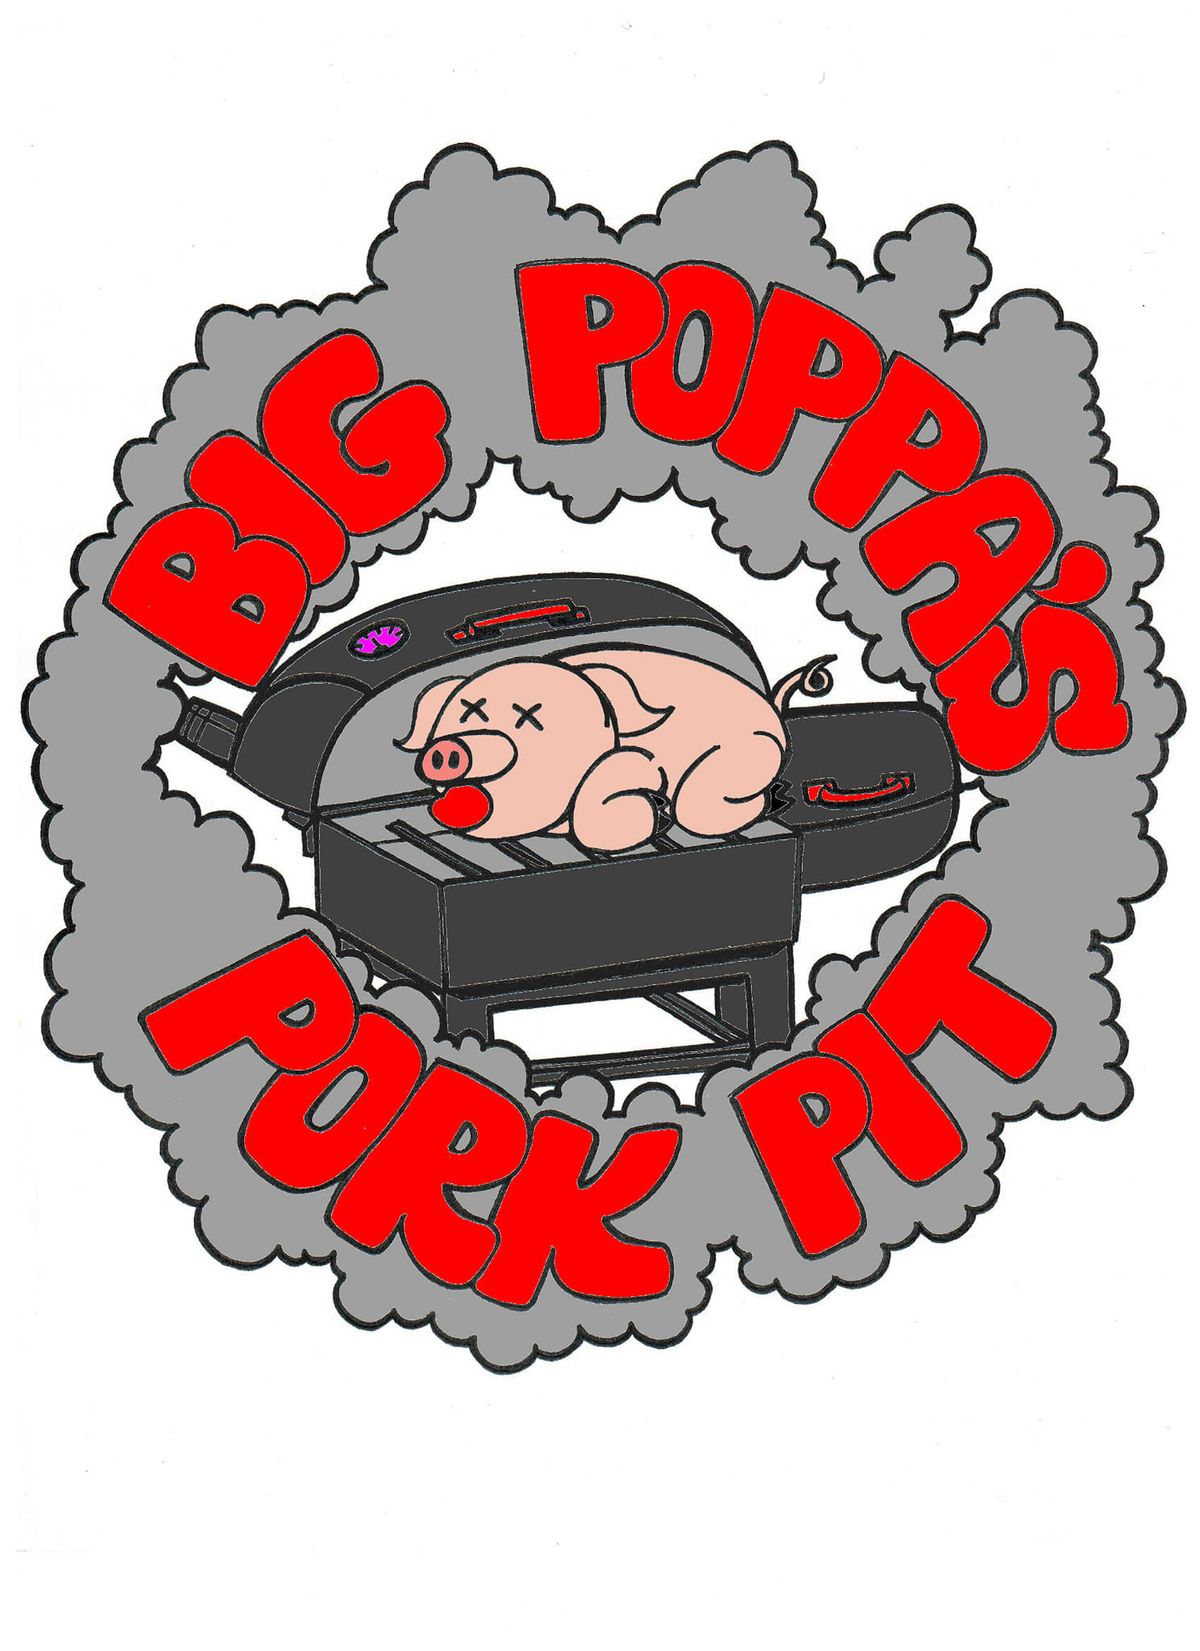 Big Poppa's Pork Pit